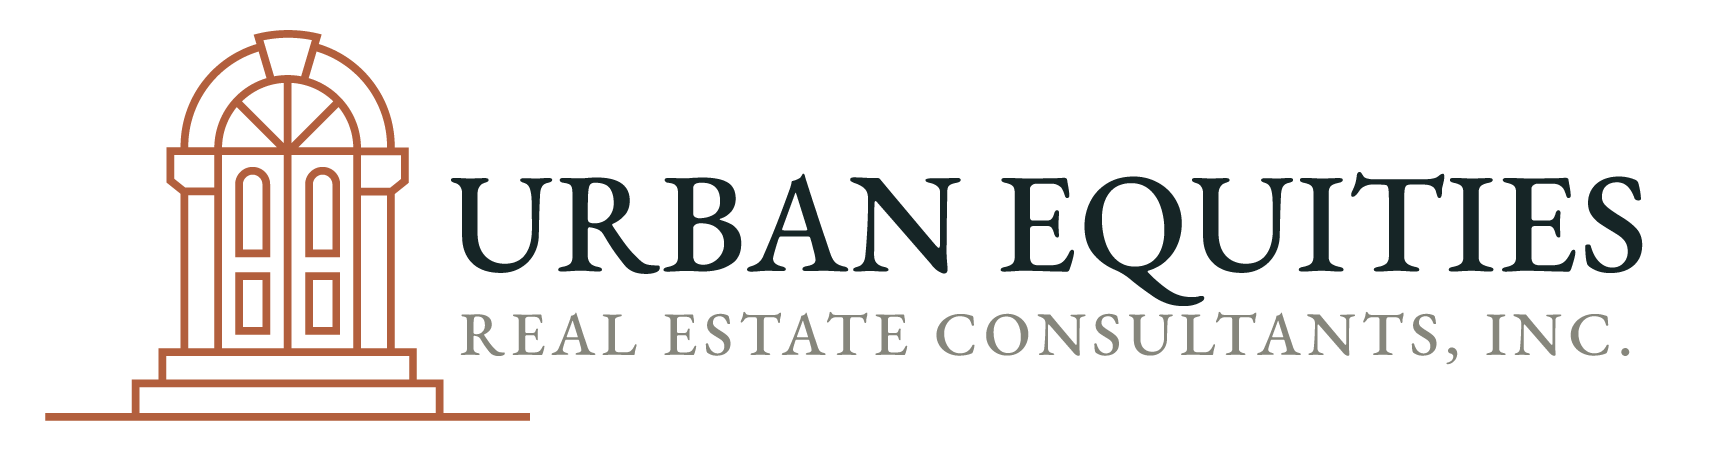 Urban Equities Real Estate Consultant, Inc. logo